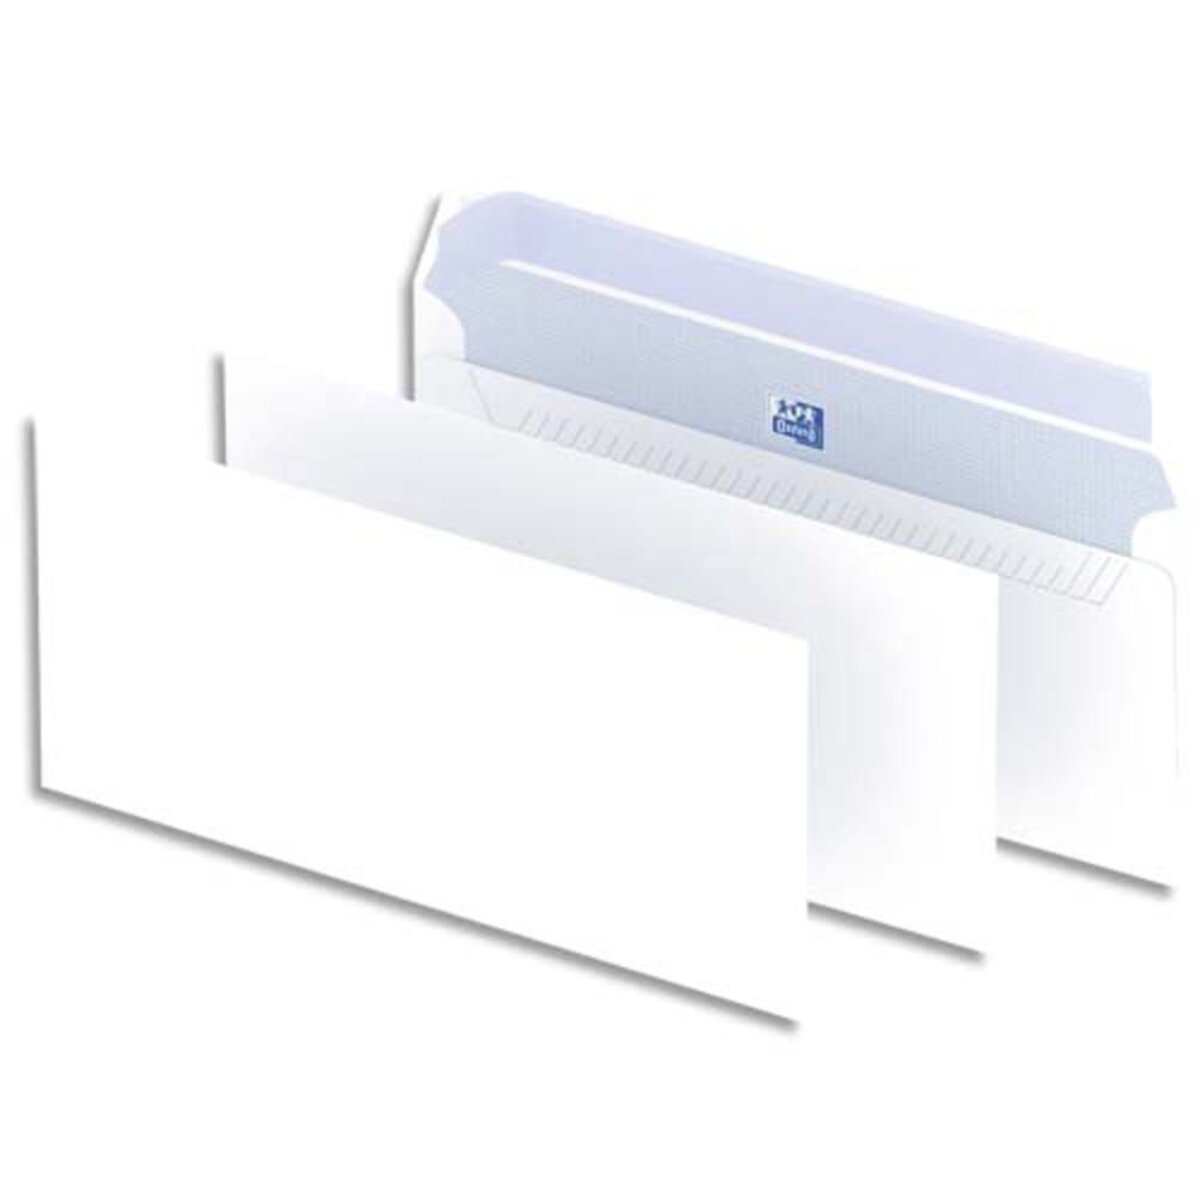 Enveloppes blanches format dl 110 x 220 mm, 90 g/m², sans fenêtre, fermeture  avec bande auto-adhésive (boîte 500 unités) - La Poste